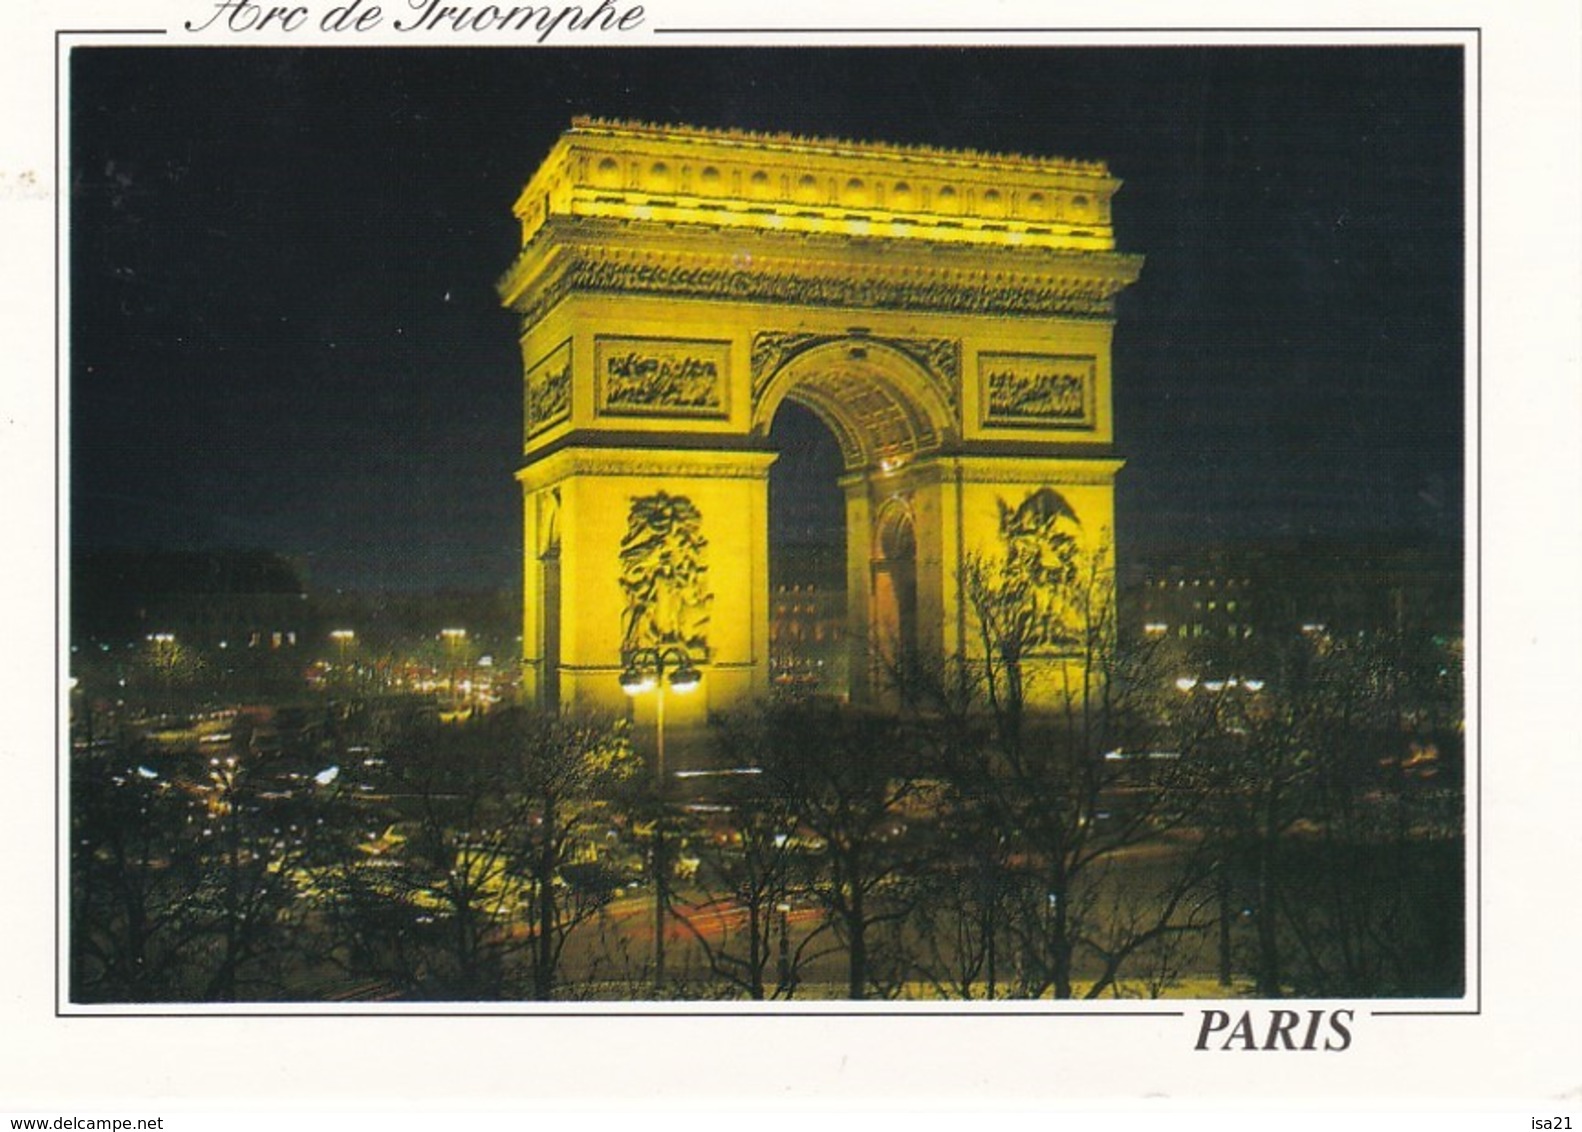 lot de 50 CPM de PARIS toutes scannées: monuments;; Tour Eiffel, ponts; églises, rues, la Seine,  etc.